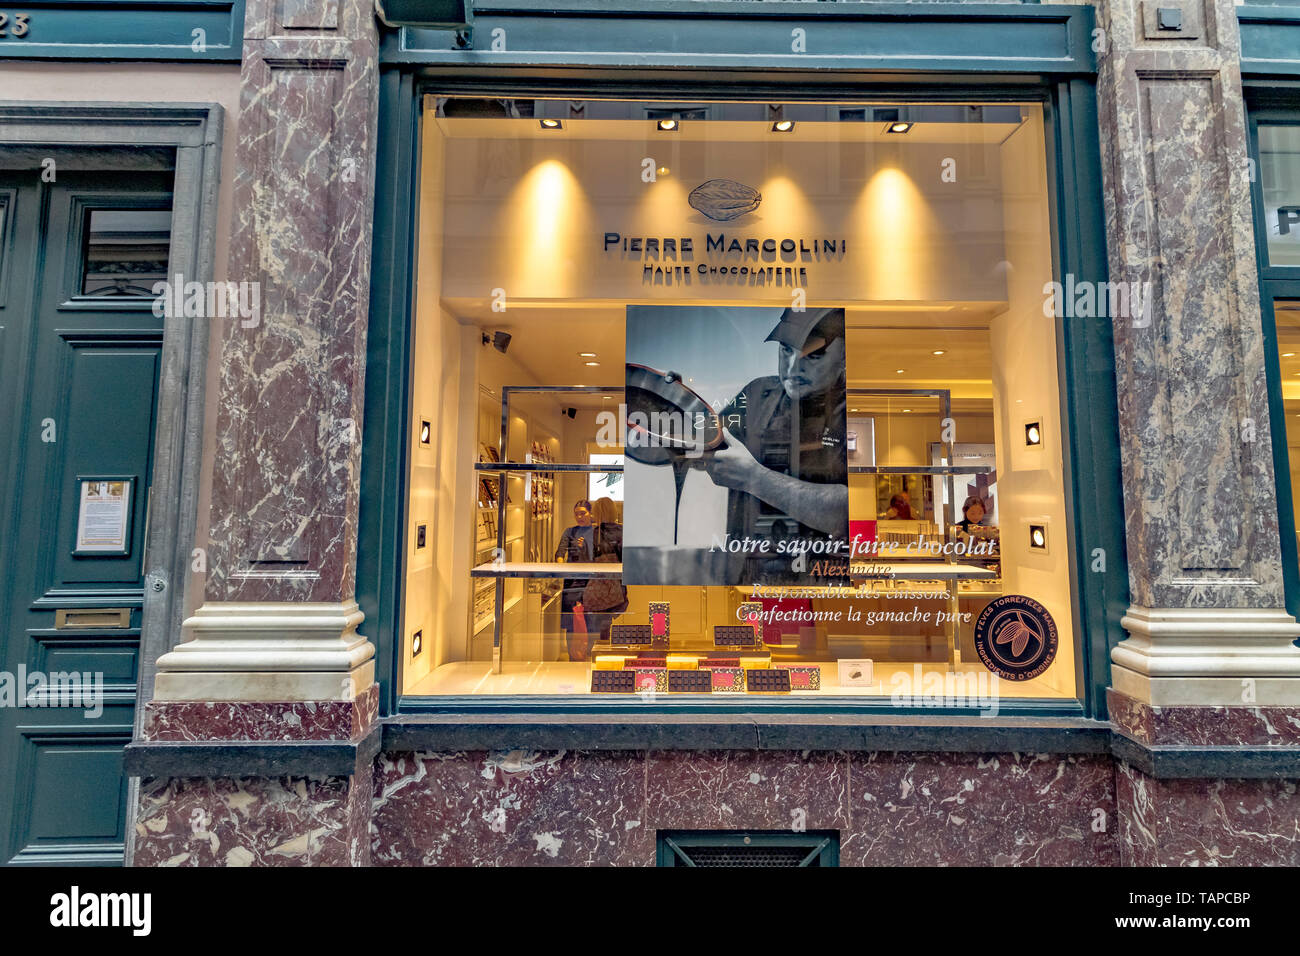 Pierre Marcolini un luxe boutique de chocolat belge Les Galeries Royales Saint-Hubert , une élégante galerie marchande émaillés à Bruxelles, Belgique Banque D'Images